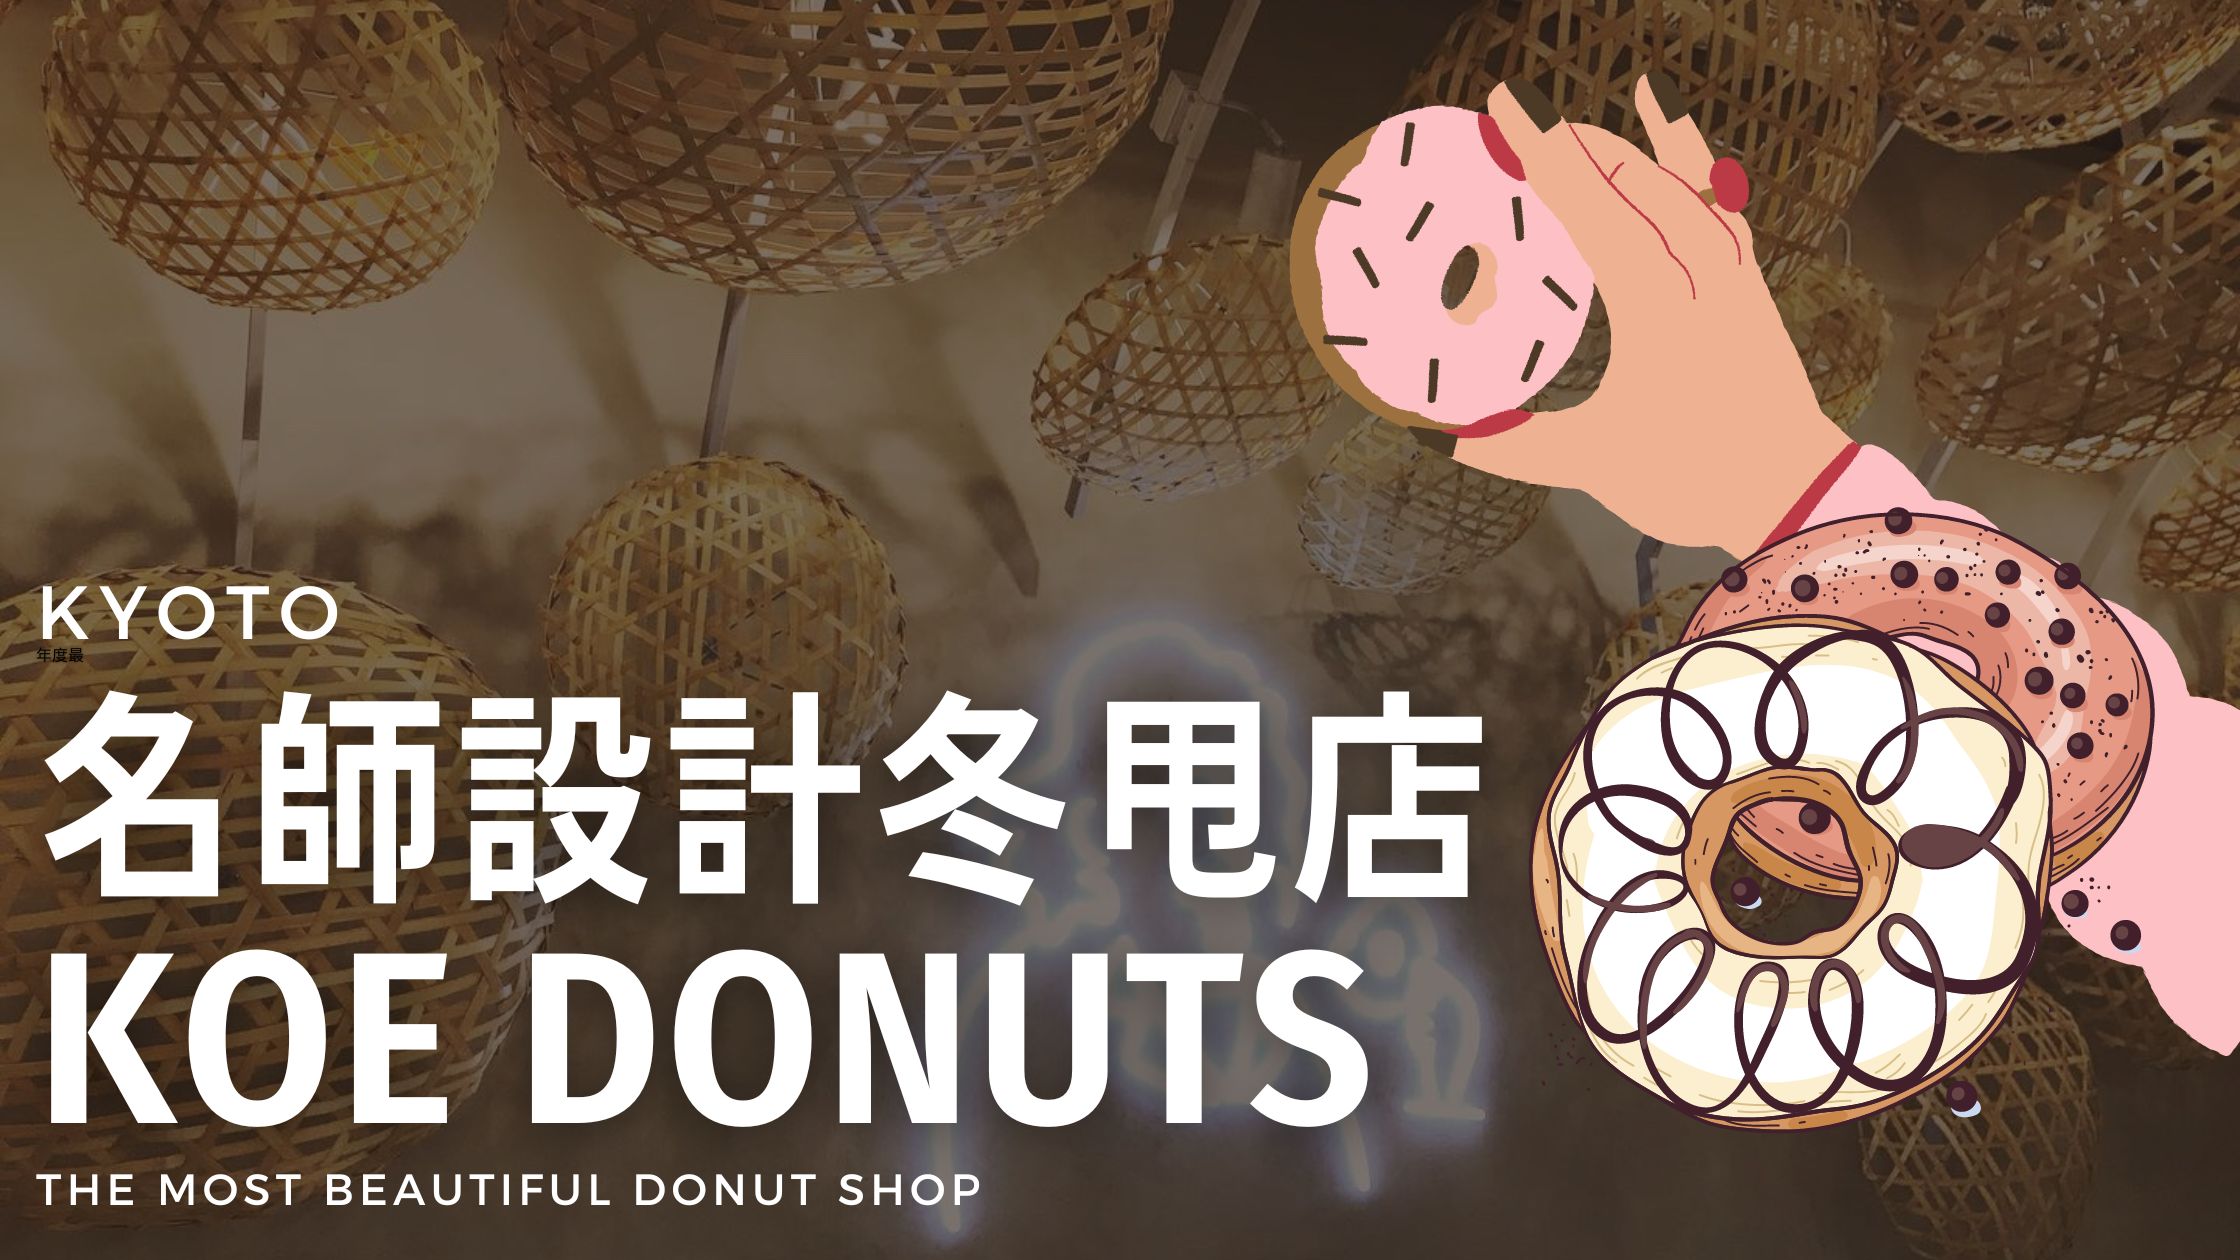 Kyoto Donuts